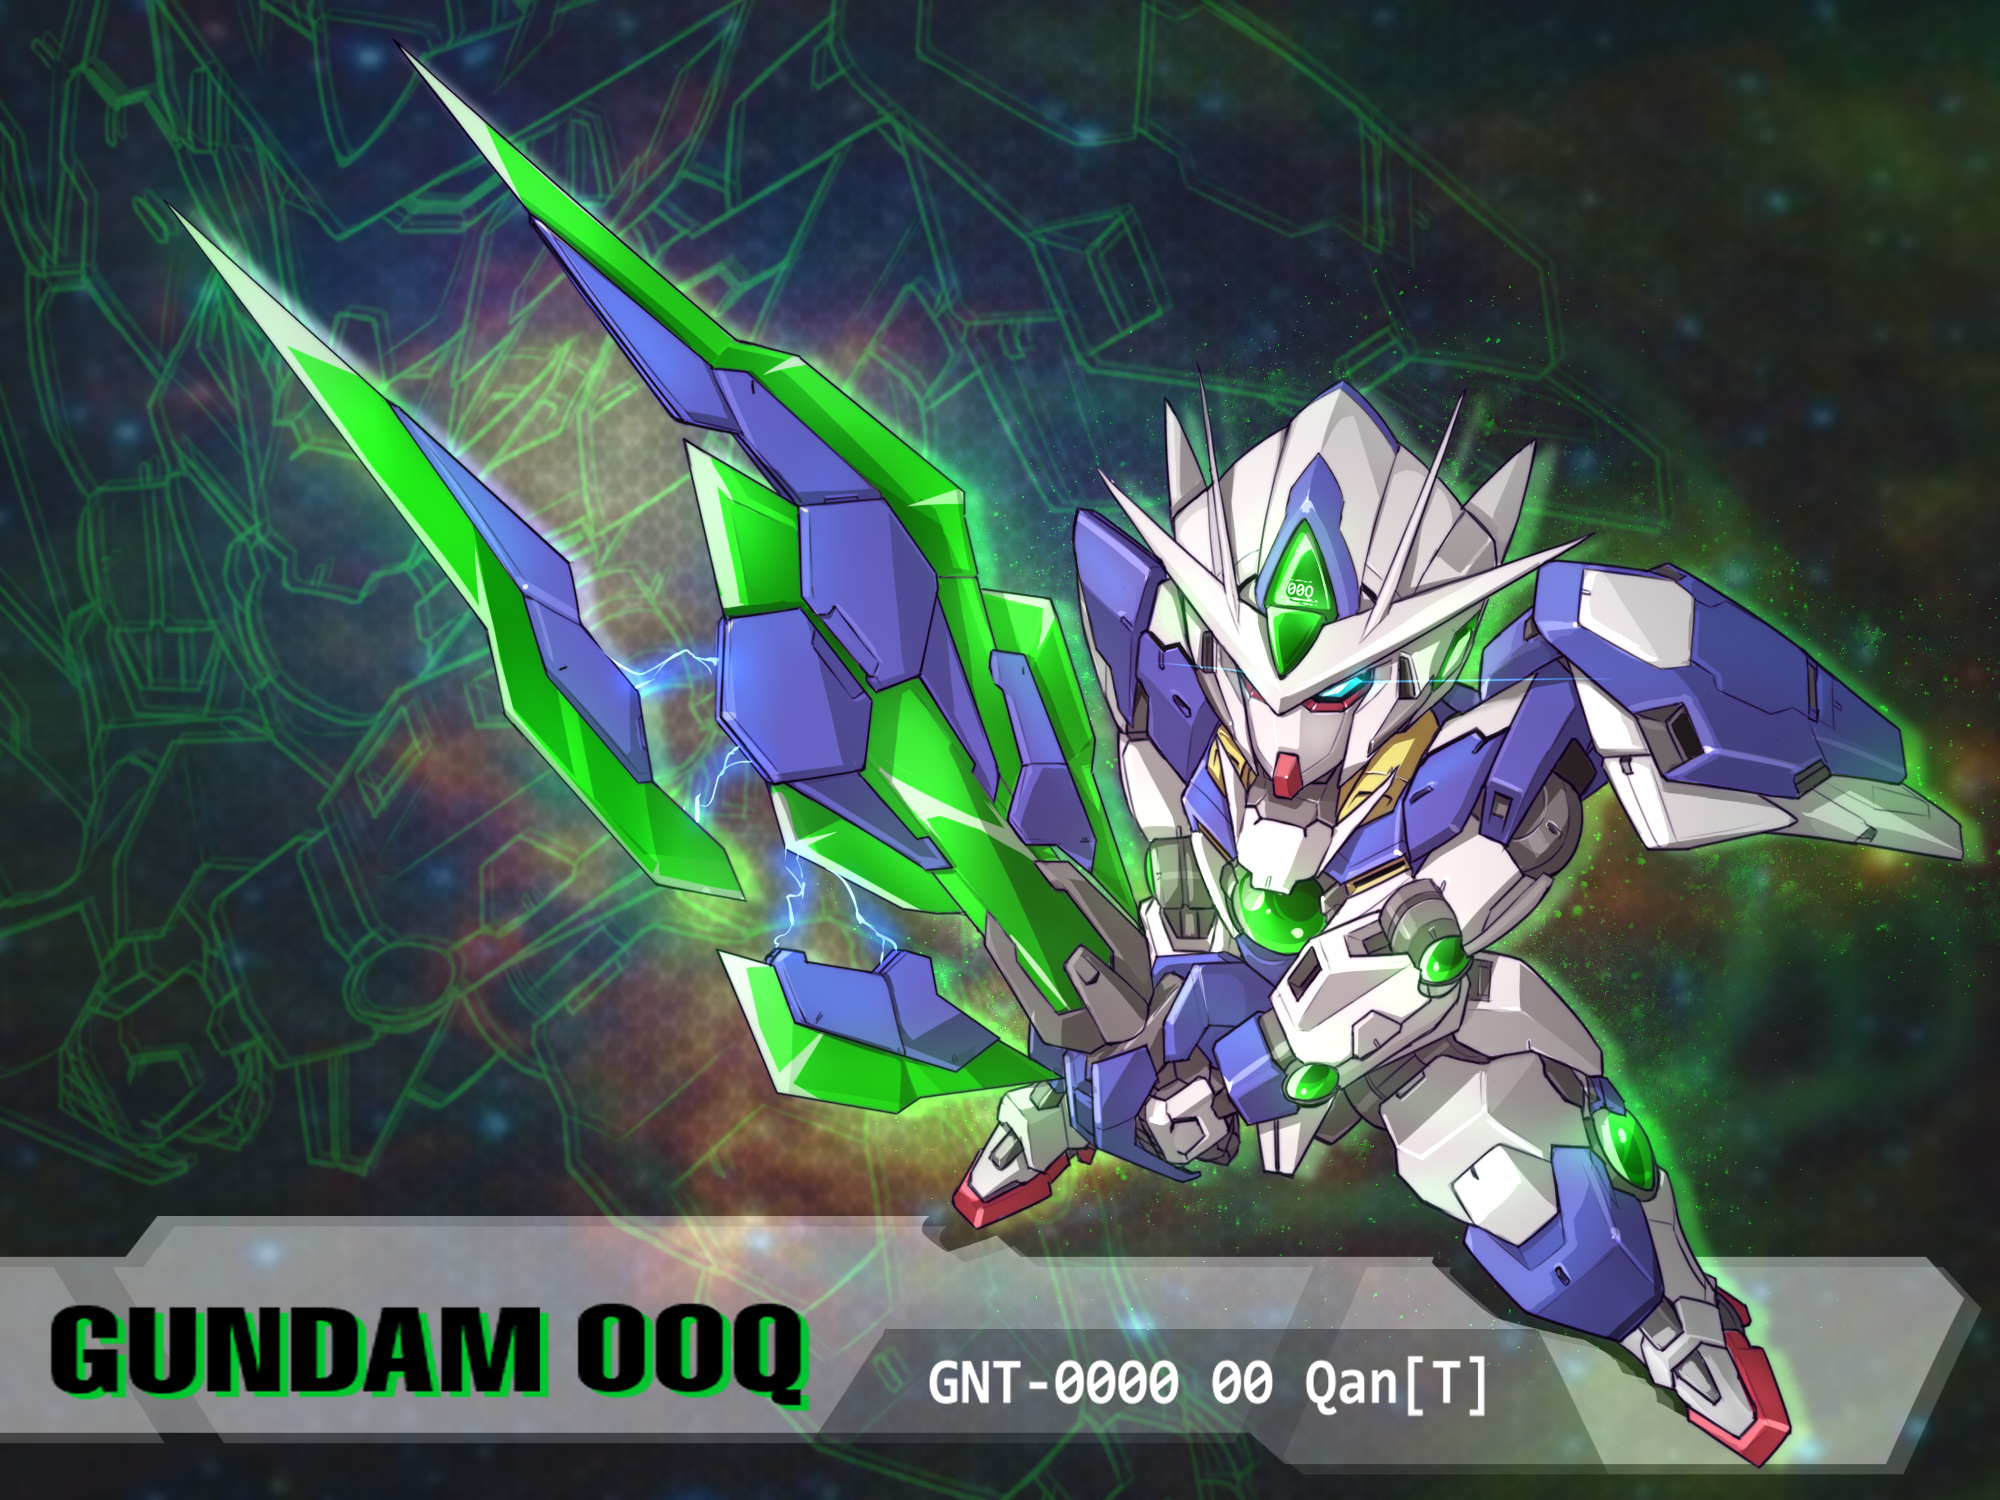 Anime Mechs Super Robot Taisen 00 Qan T Gundam Mobile Suit Gundam 00 Artwork Digital Art Fan Art 2000x1500